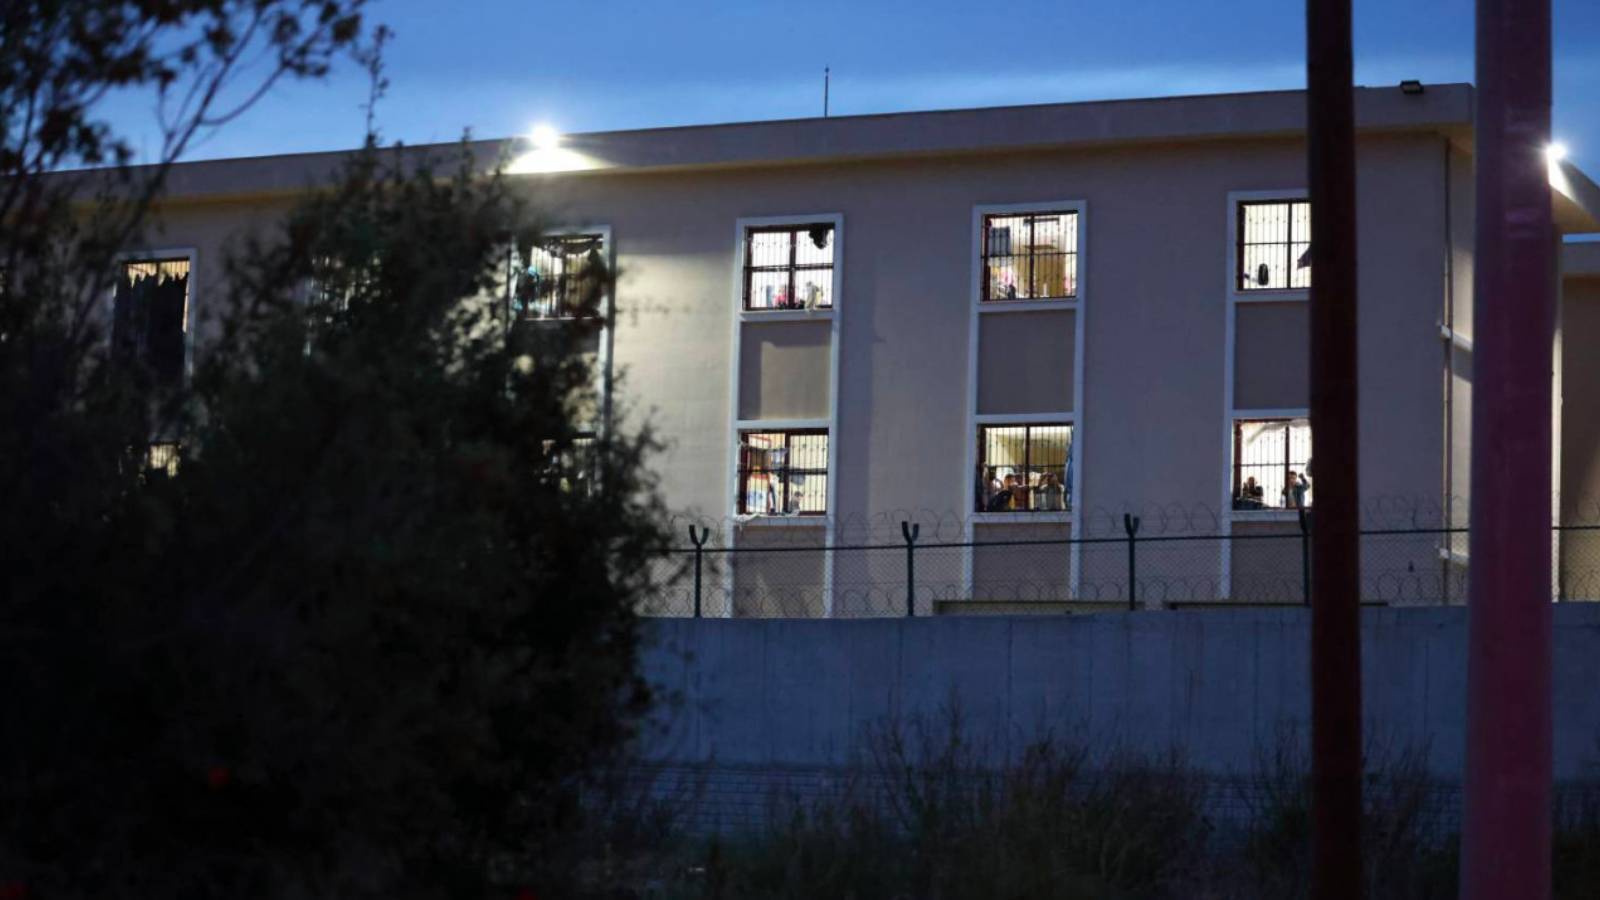 antalya'daki geri gönderme merkezi’nde 52 mülteciden yardım çığlığı: i̇şkence, türkiye’de 90’lı yıllarda kalmış bir suç değil